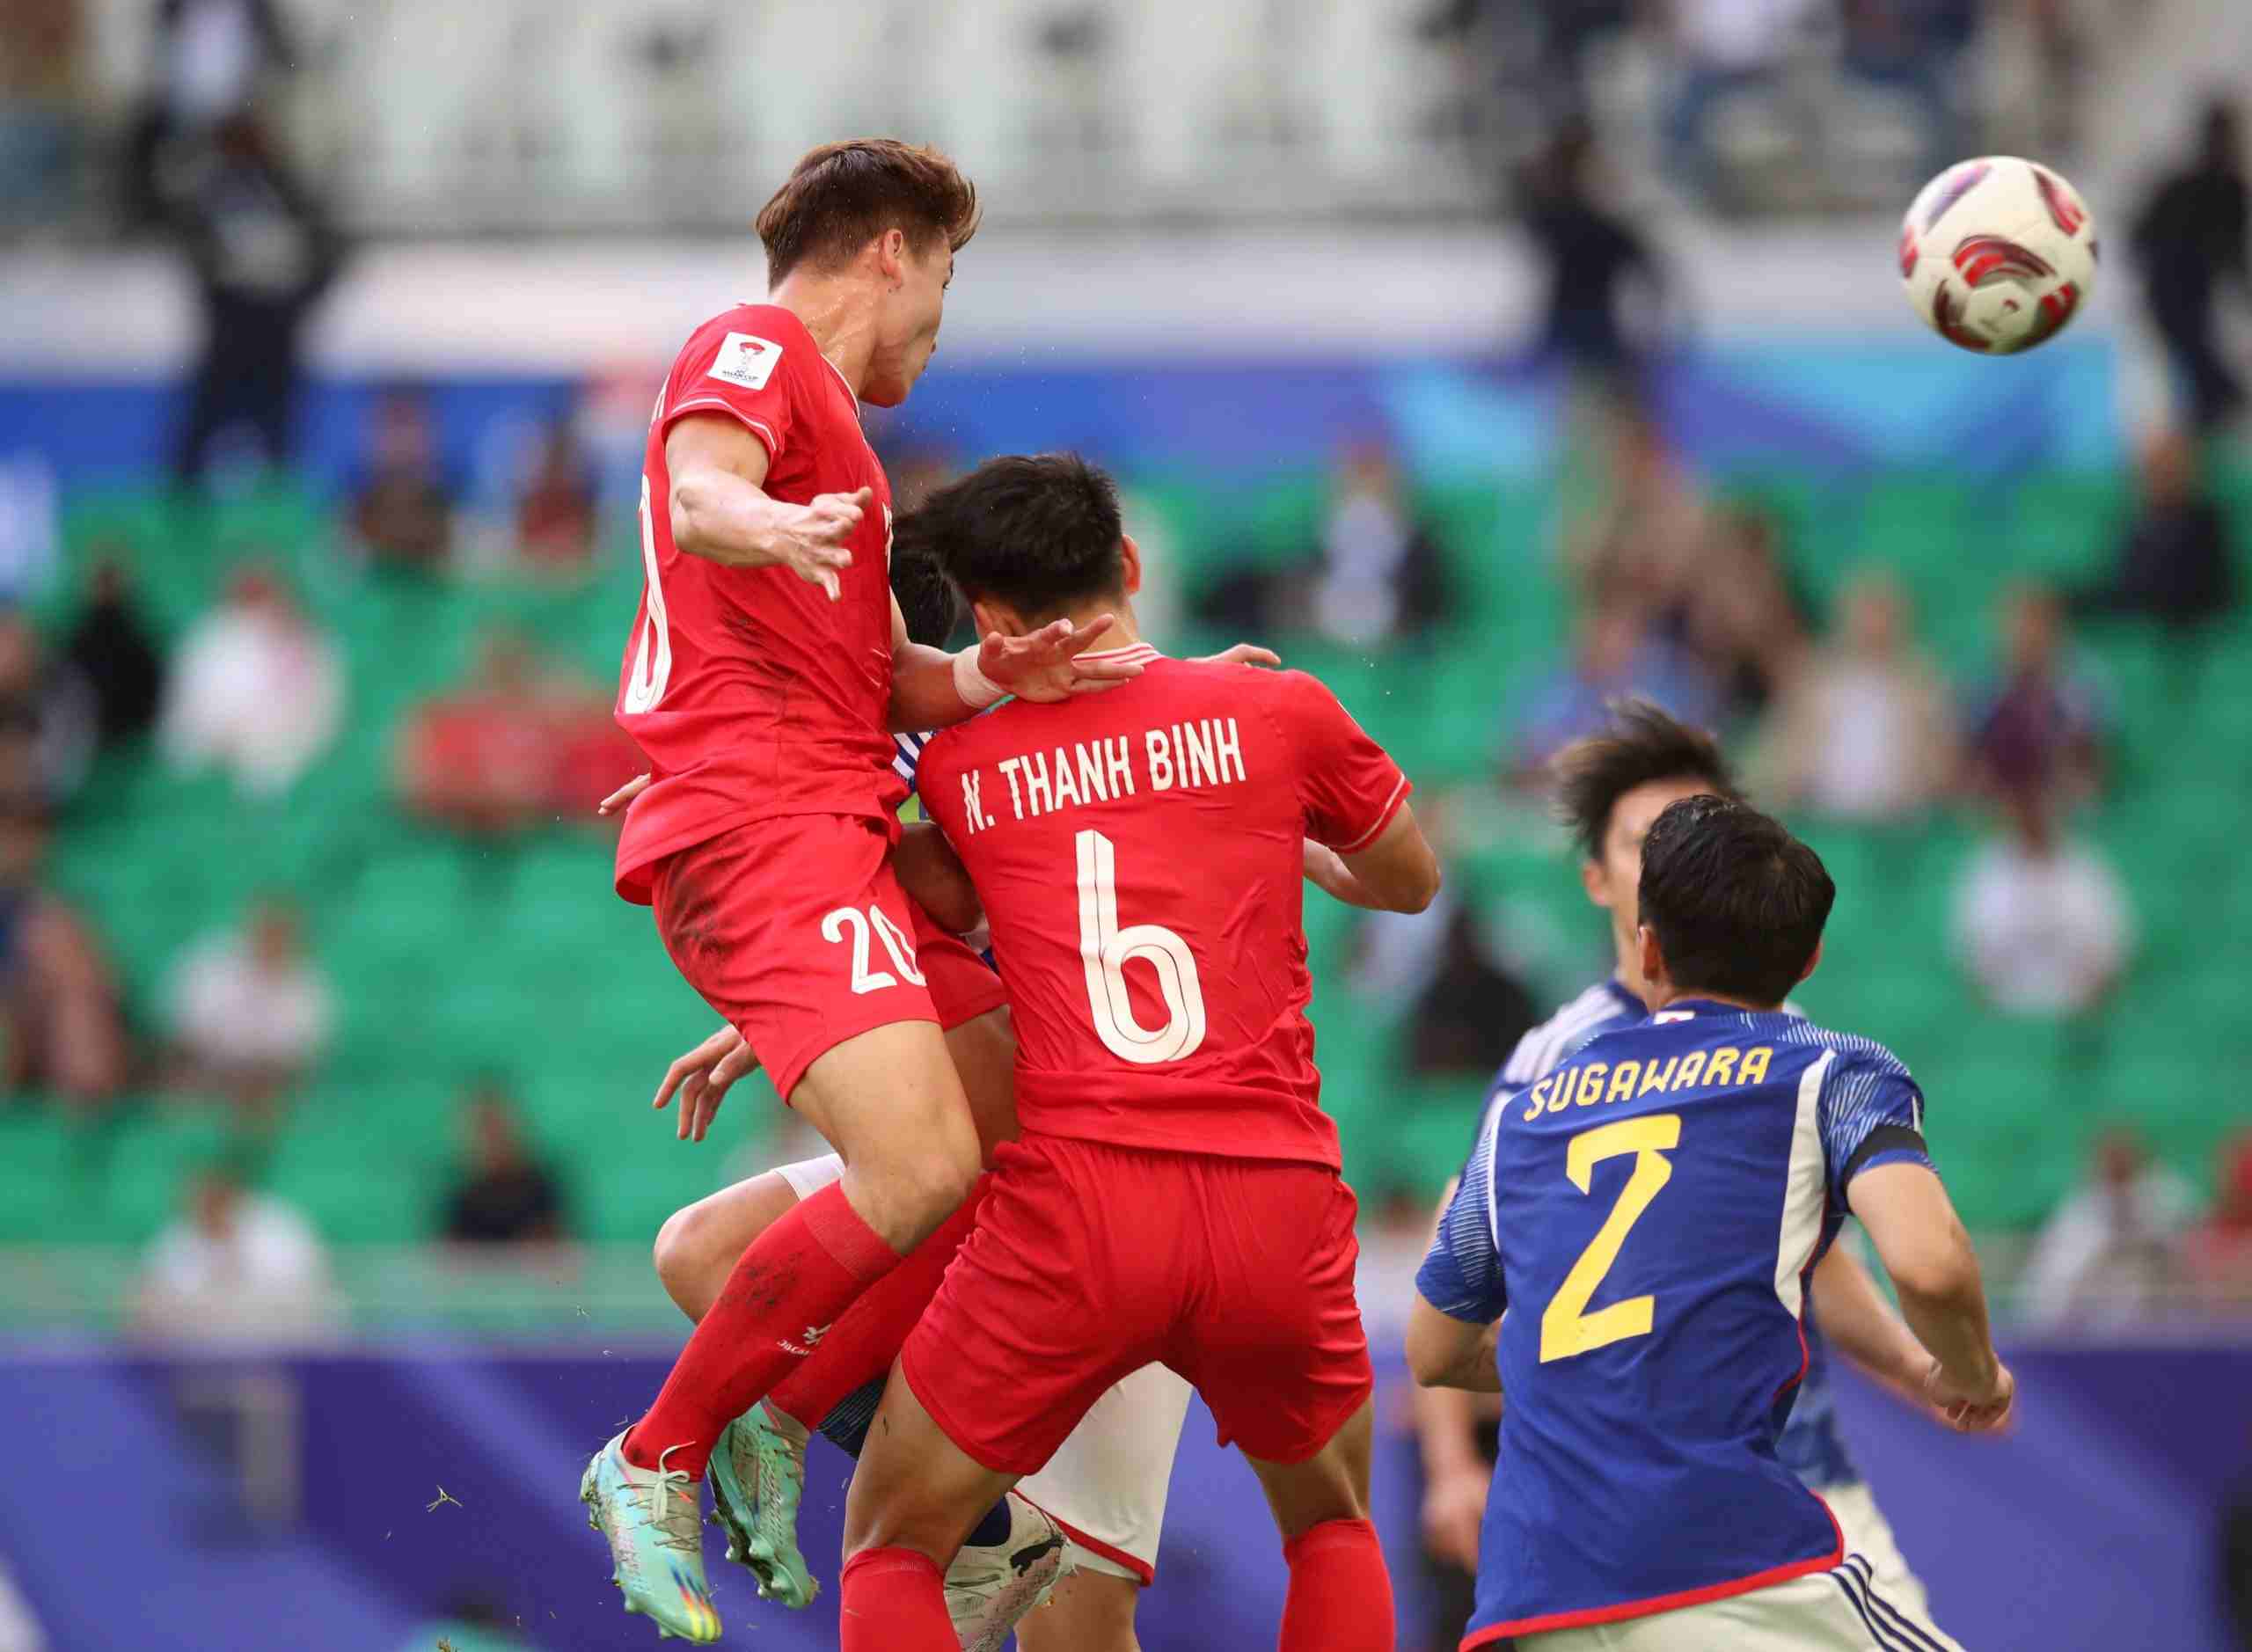 Tình huống không chiến của Việt Anh để tạo cơ hội cho Tuấn Hải ghi bàn nâng tỉ số lên 2-1 cũng xuất phát từ một pha bóng cố định. Ảnh: Quỳnh Anh